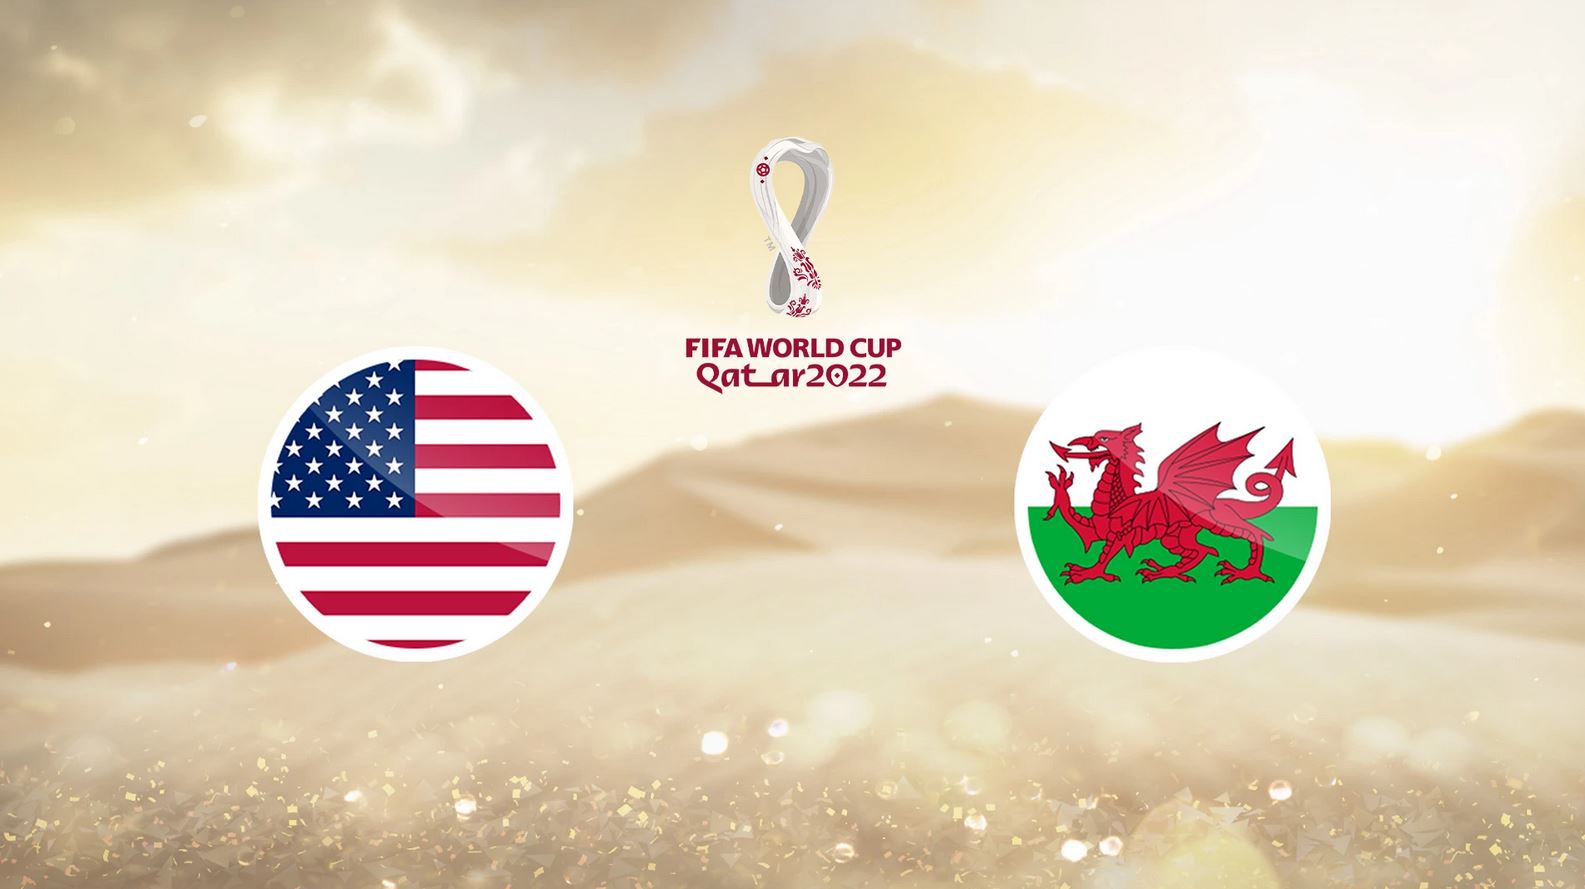 Parier sur USA / Pays de Galles - Pronostics Coupe du Monde 2022